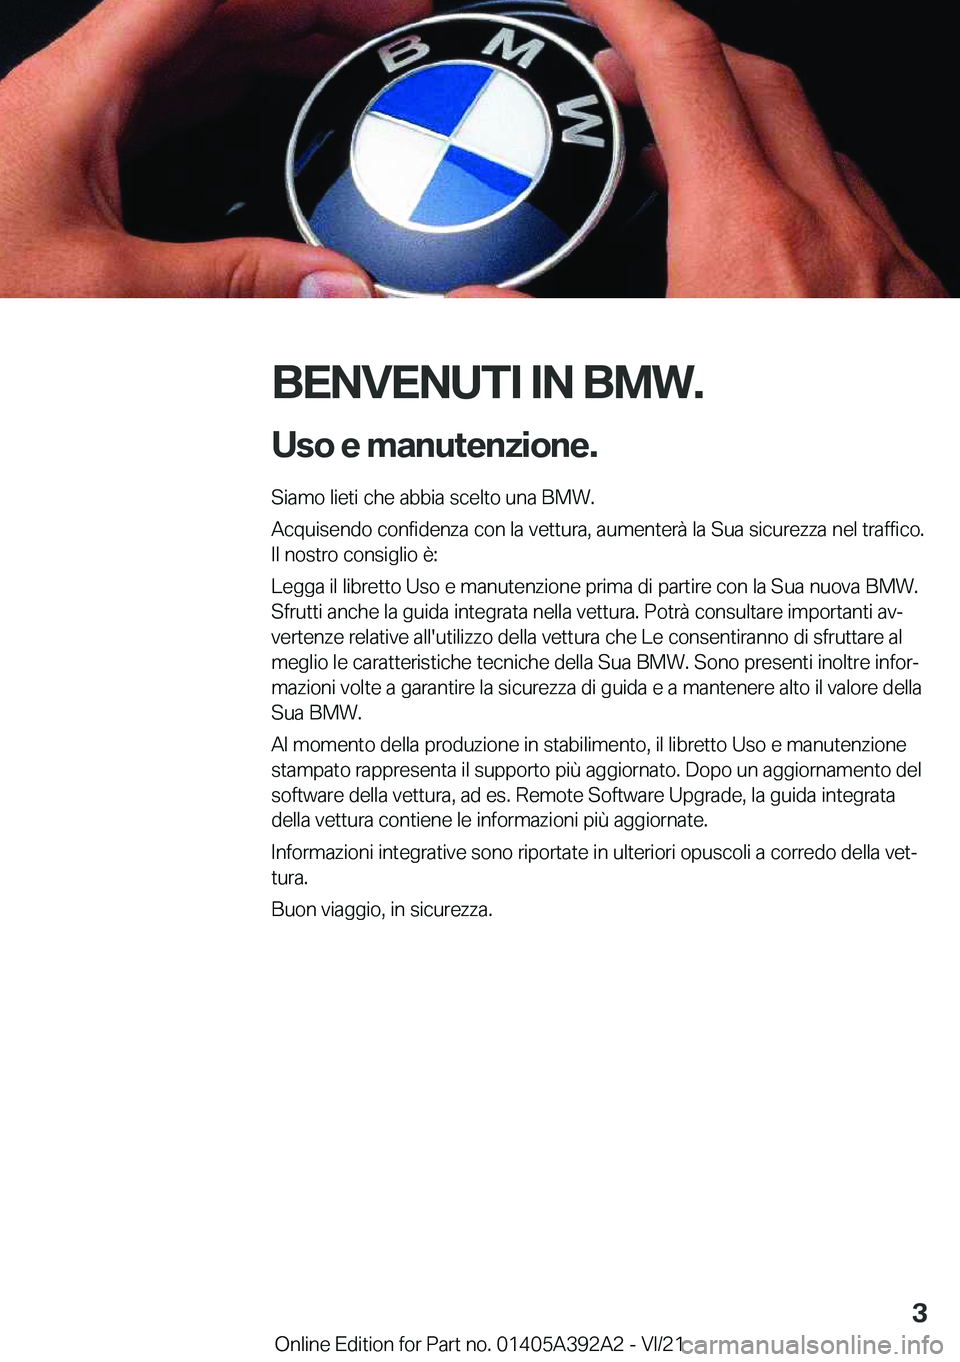 BMW 4 SERIES 2022  Libretti Di Uso E manutenzione (in Italian) �B�E�N�V�E�N�U�T�I��I�N��B�M�W�.�U�s�o��e��m�a�n�u�t�e�n�z�i�o�n�e�.
�S�i�a�m�o��l�i�e�t�i��c�h�e��a�b�b�i�a��s�c�e�l�t�o��u�n�a��B�M�W�.
�A�c�q�u�i�s�e�n�d�o��c�o�n�f�i�d�e�n�z�a��c�o�n�